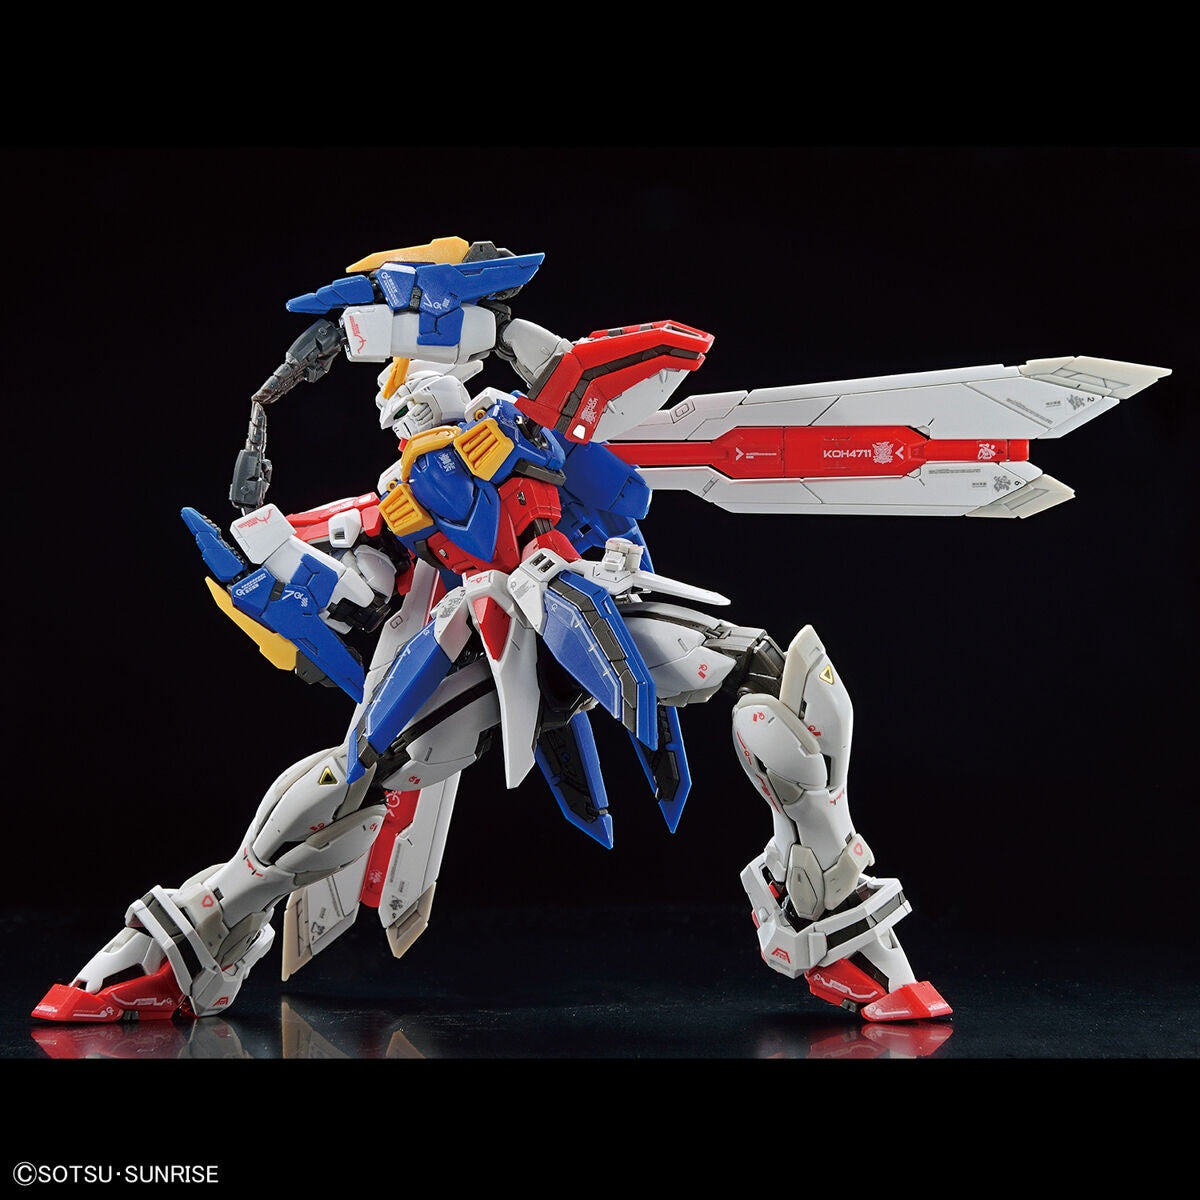 RG #37 1/144 God Gundam